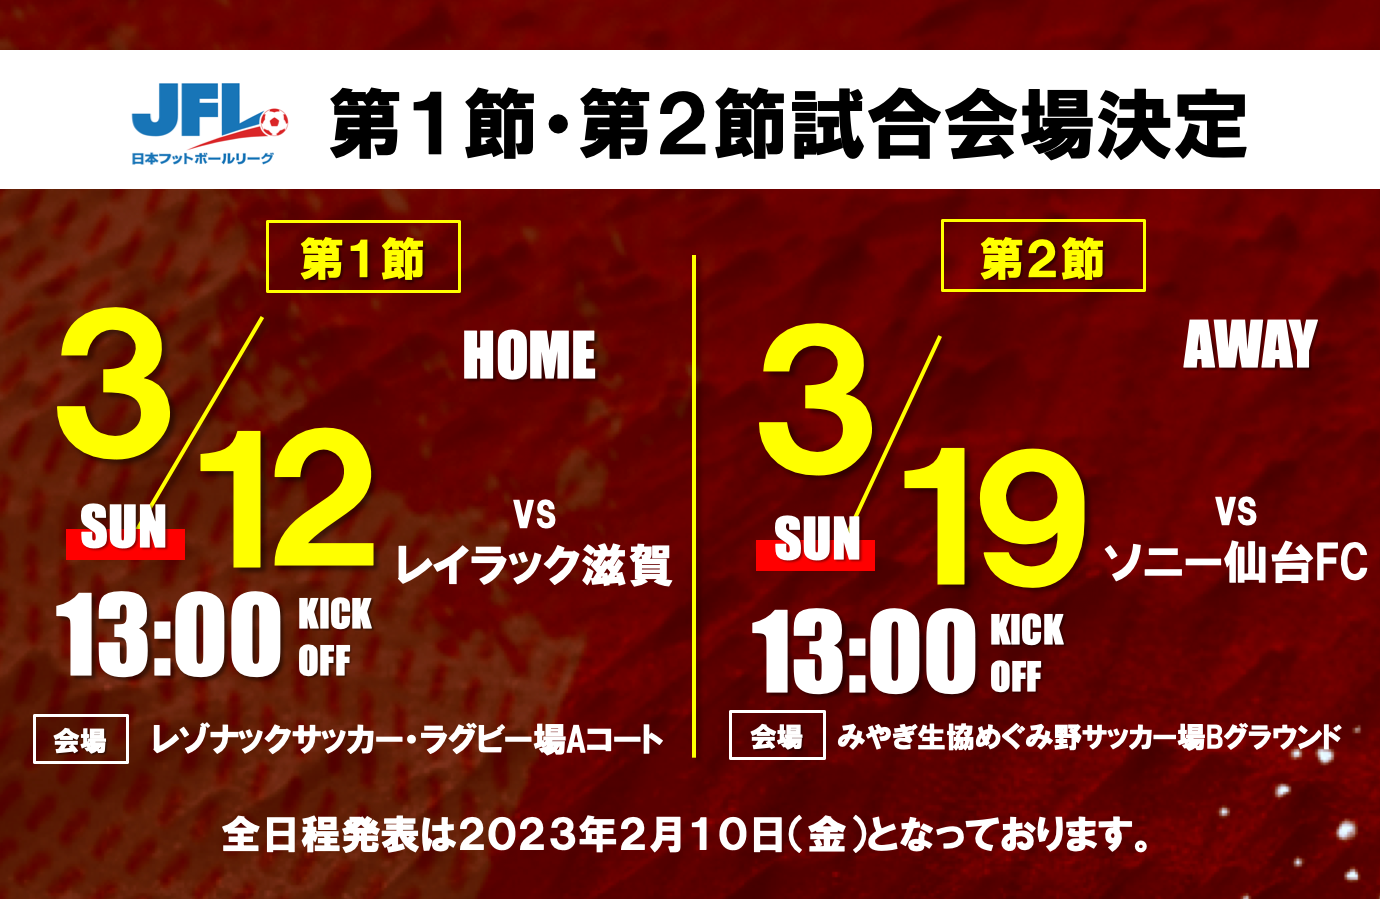 第25回 日本フットボールリーグ開幕カード試合会場決定のお知らせ